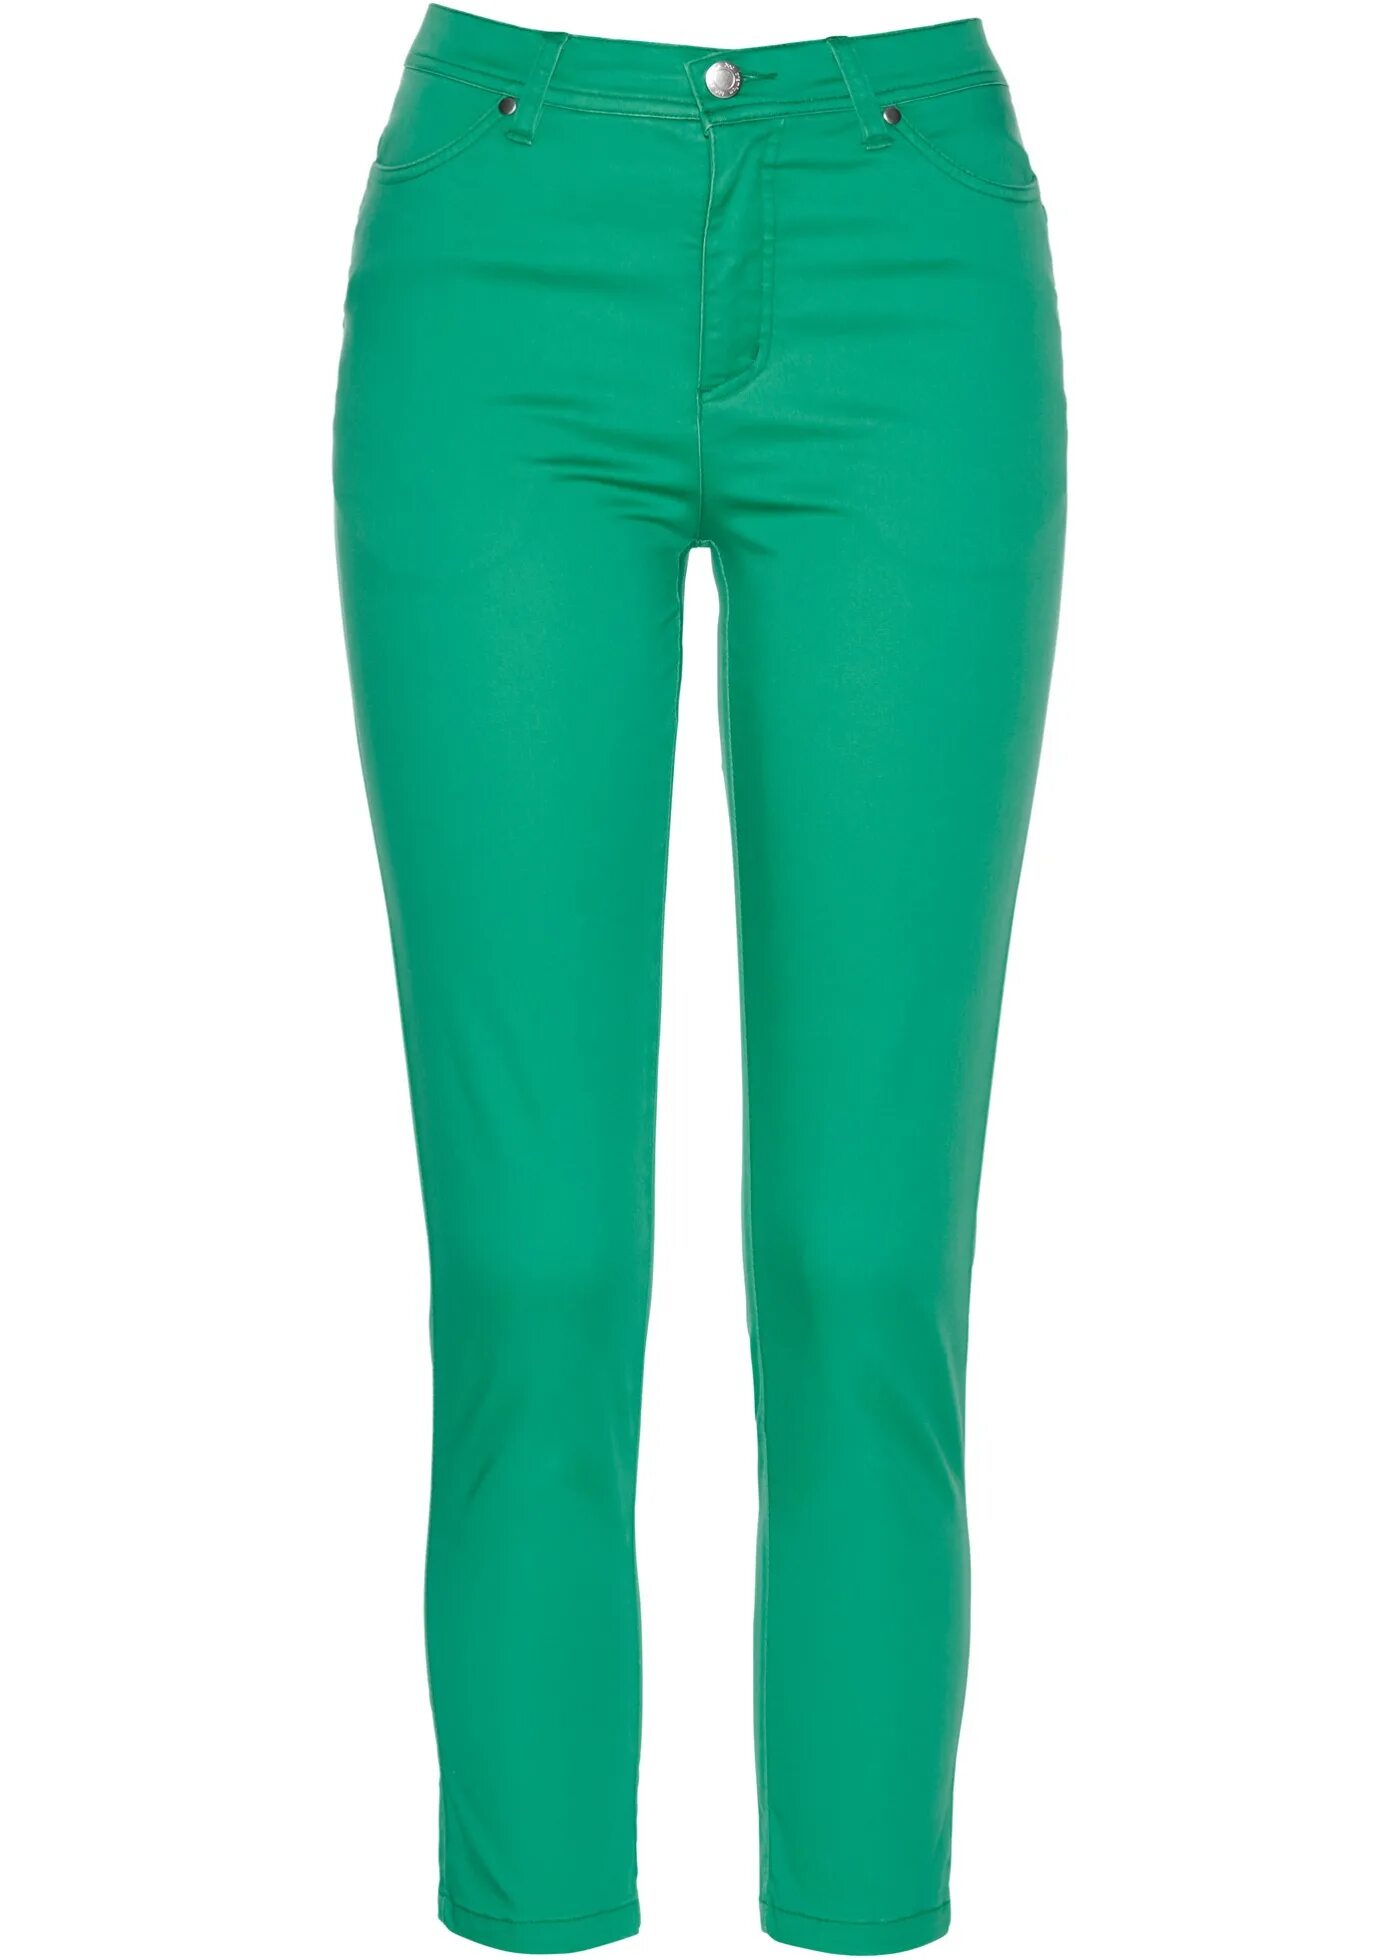 Купить брюки стрейч. Брюки стрейч. Стрейчевые штаны женские. Брюки стрейч женские. Зелёные брюки женские.